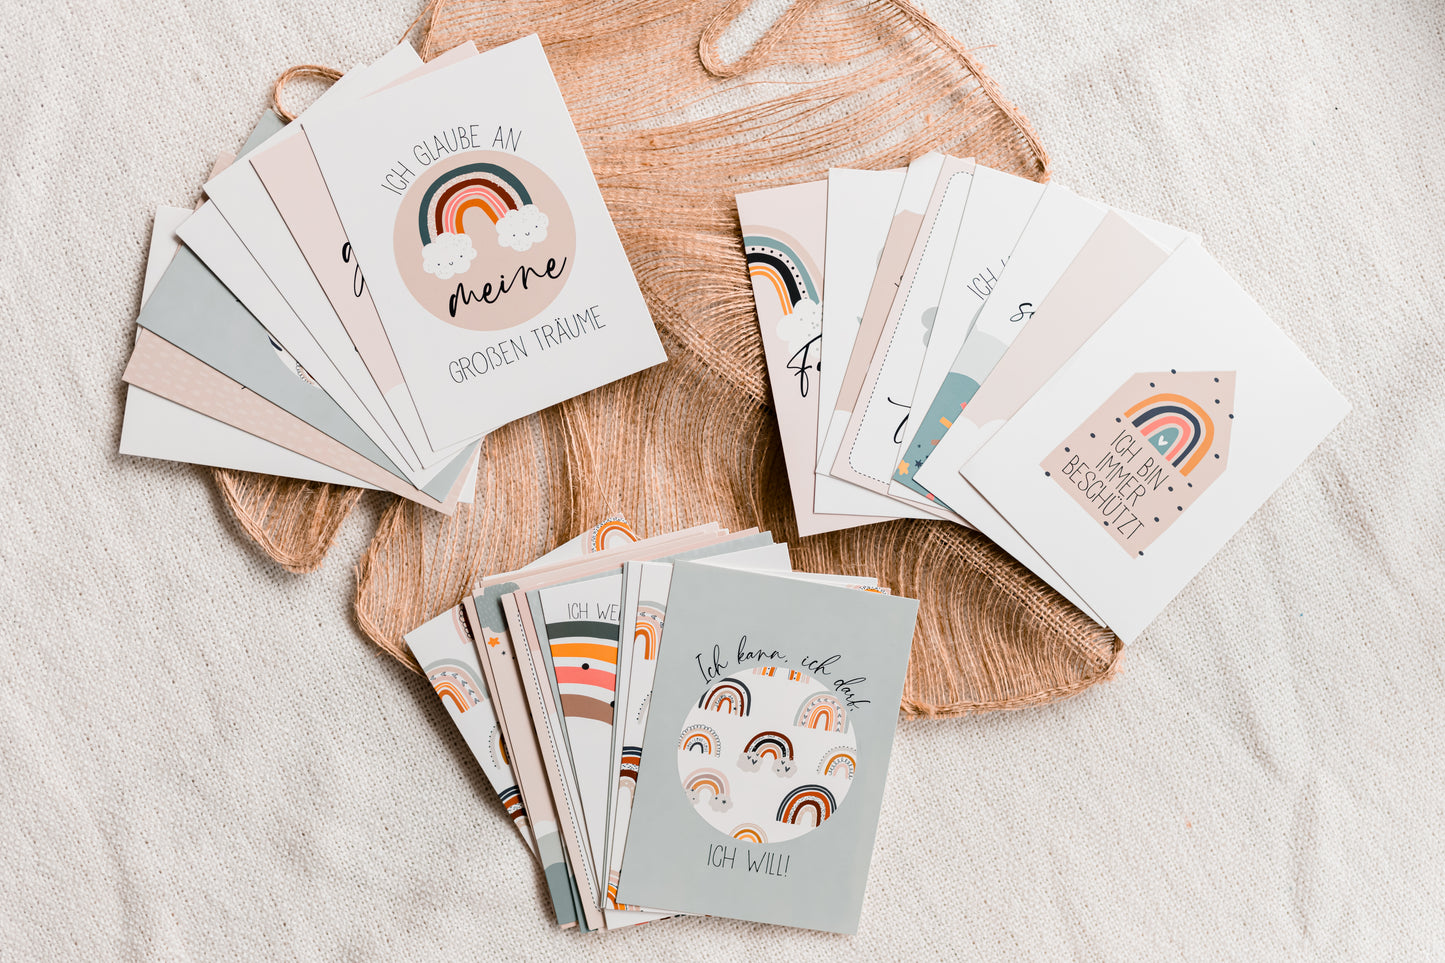 Affirmationskarten für Kinder - 32 liebevoll gestaltete Karten - Süße Regenbogen Illustrationen & wundervolle Affirmationen für Kids